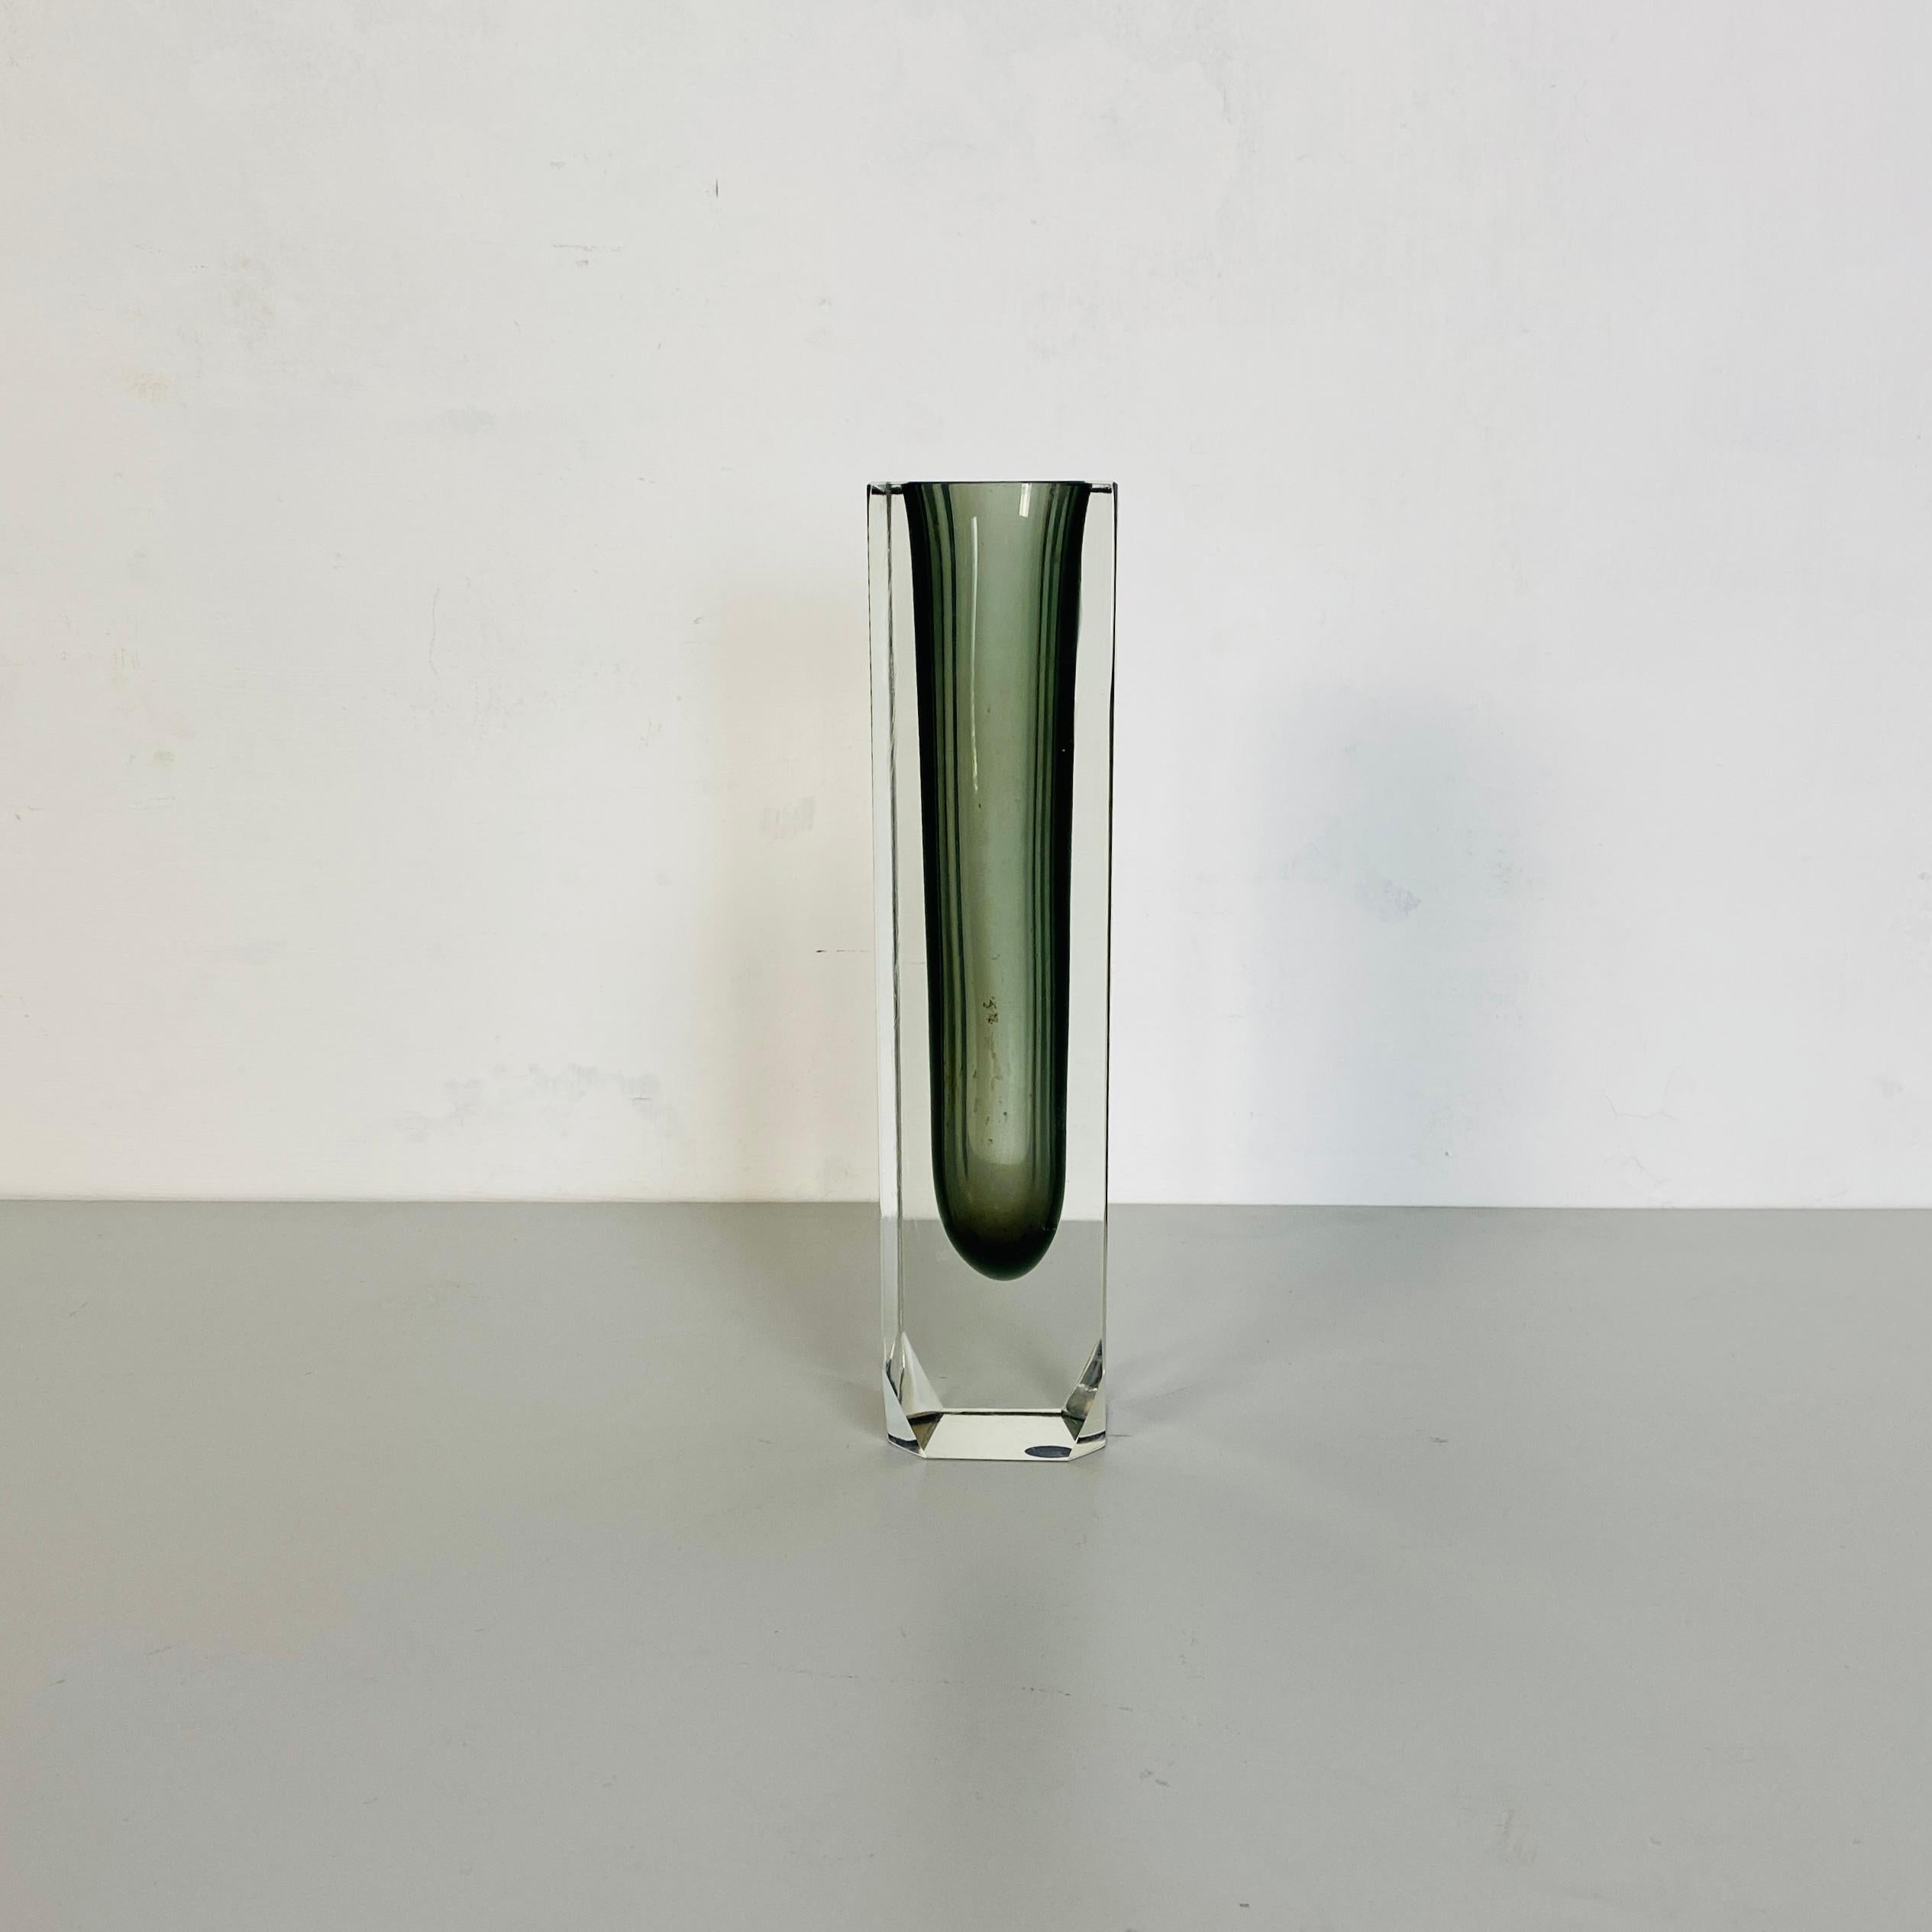 Italienische Mid-Century Modern graues Muranoglas Sommersi Serie, 1960er Jahre
Graue Vase aus Muranoglas aus der Serie I Sommersi.
Diese fantastische Serie von Murano-Glas-Vase mit verschiedenen farbigen Schattierungen, ist die i sommersi Serie Vase